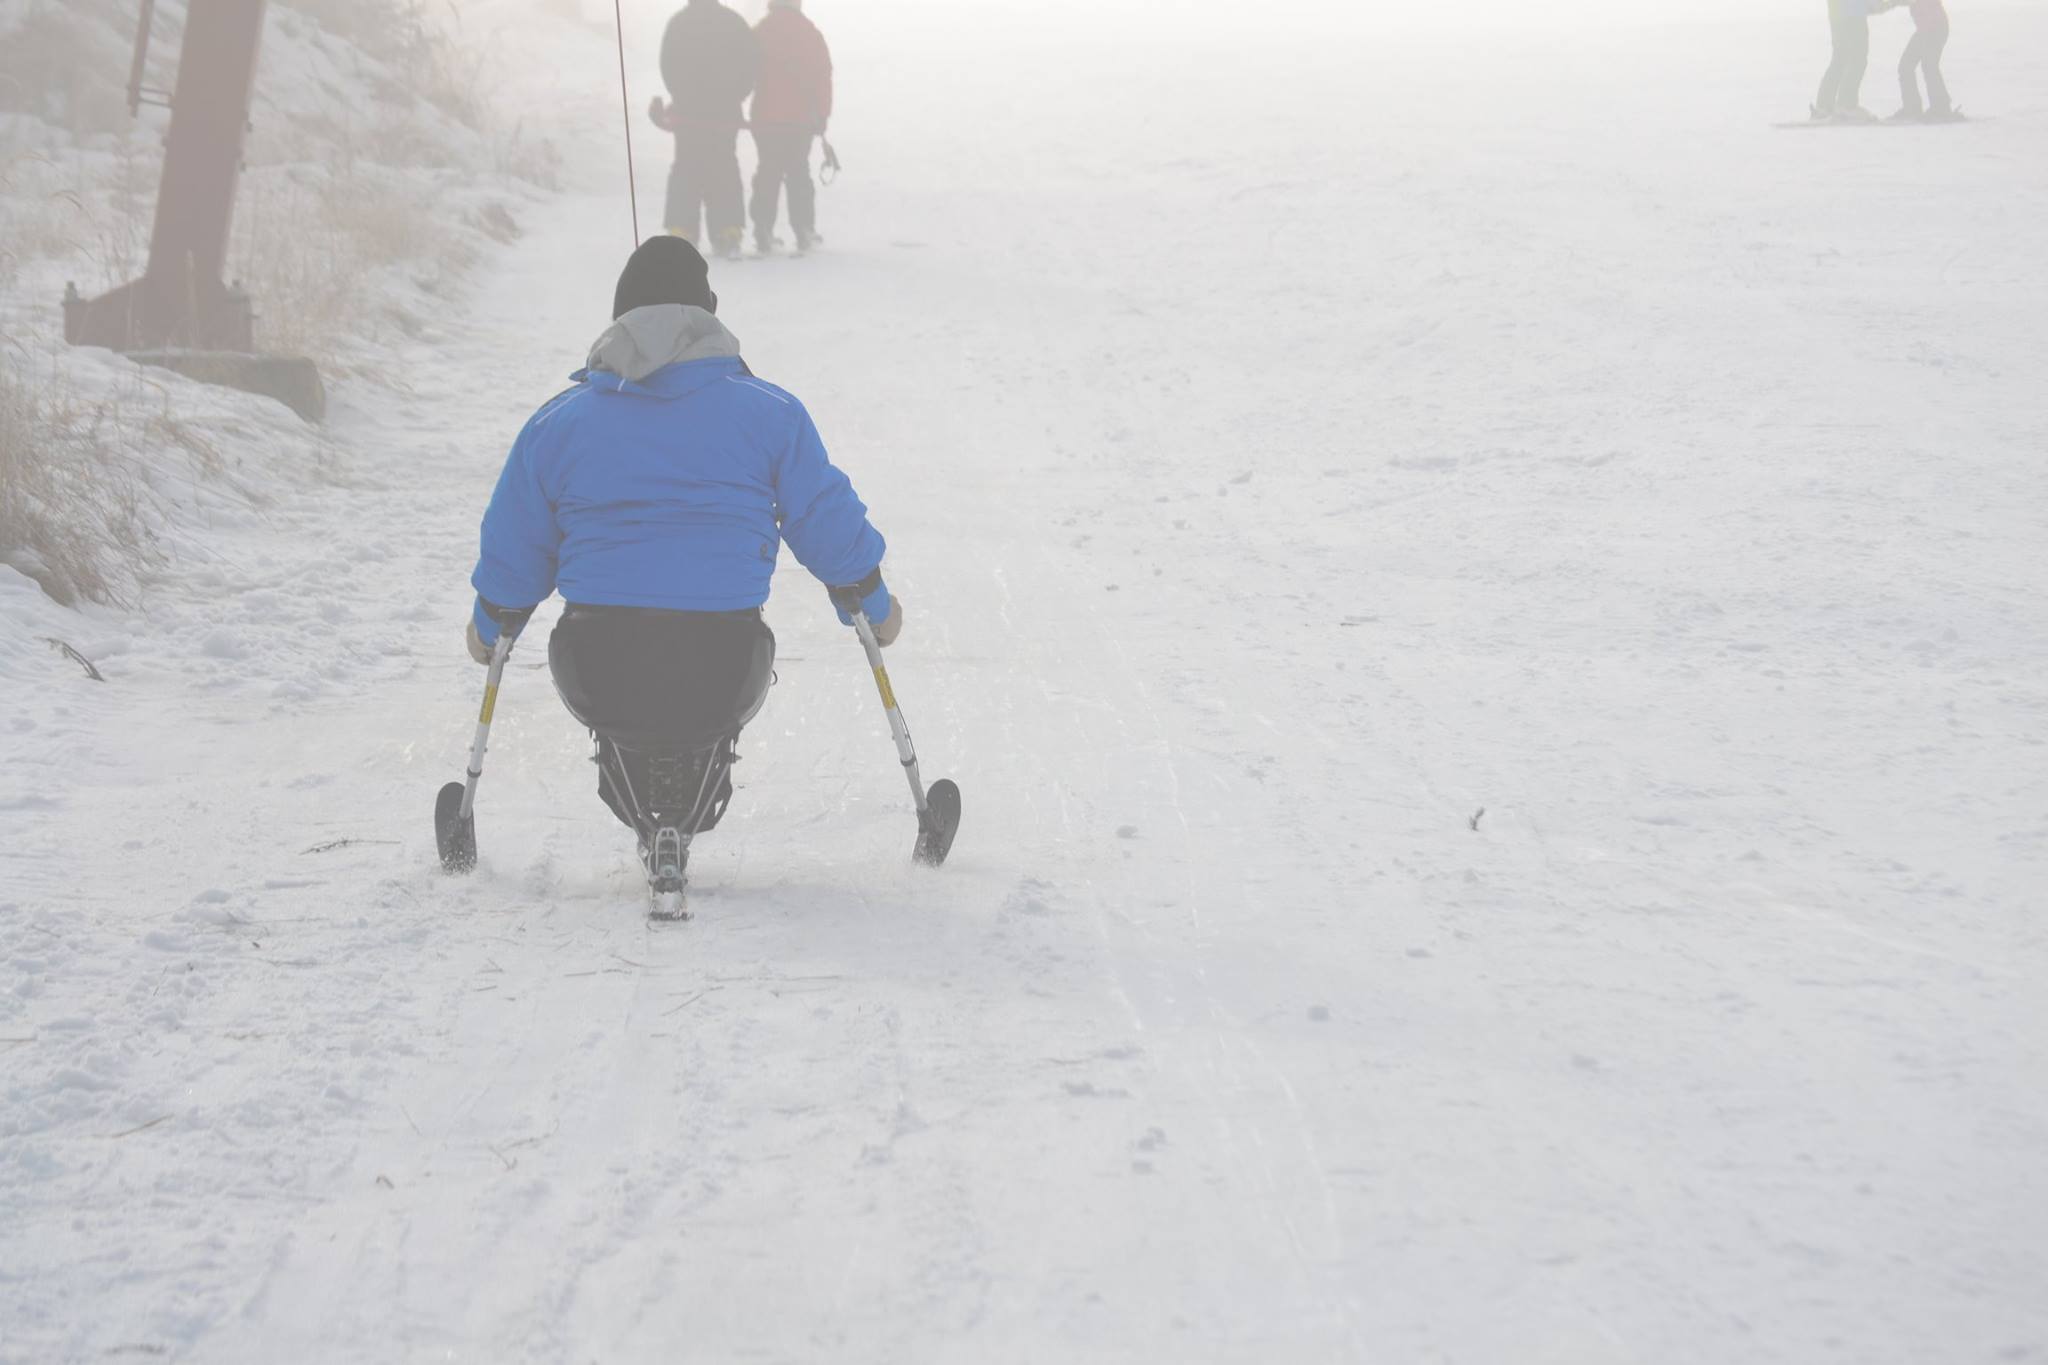 Ziua de 13 a fost cu ghinion pentru Florin, care a ramas imobilizat intr-un scaun cu rotile din cauza unui accident la alpinism